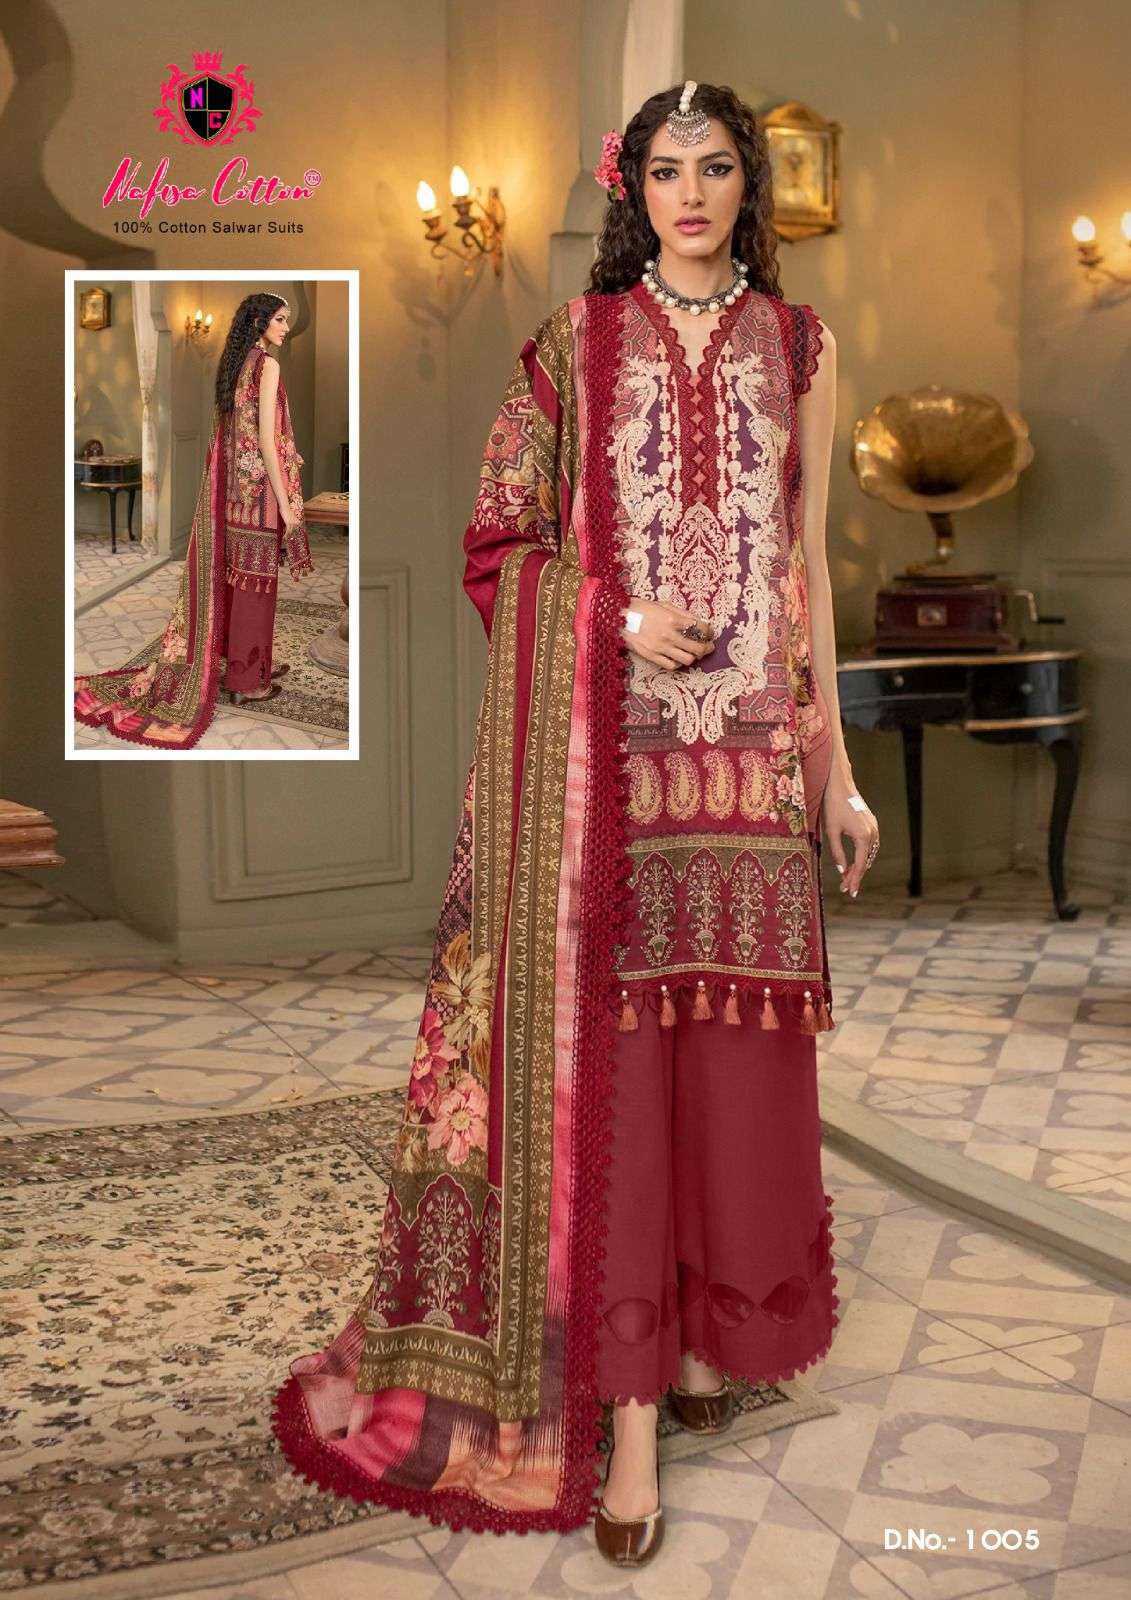 nafisa cotton safina karachi suits 1001-1006 series pakistani salwar kameez catalogue wholesale price surat